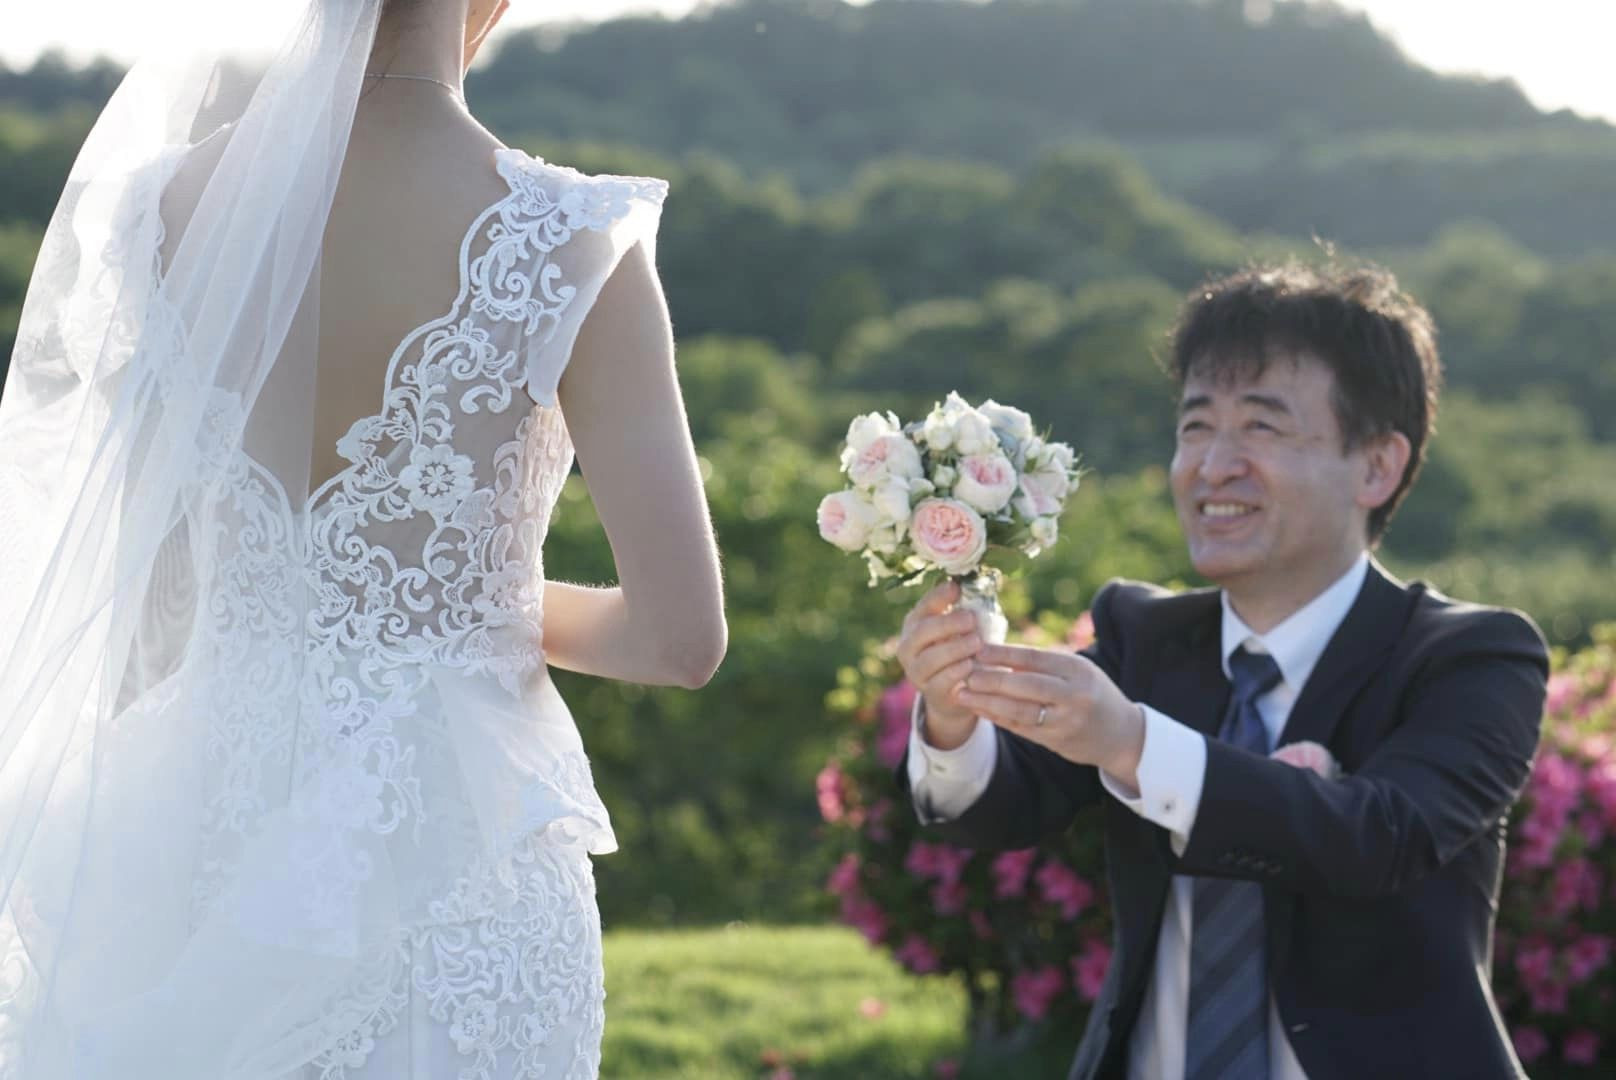 Chồng Nhật ngại tạo dáng, vợ Việt chờ 5 năm chụp ảnh cưới tuyệt đẹp 0 đồng - Ảnh 10.